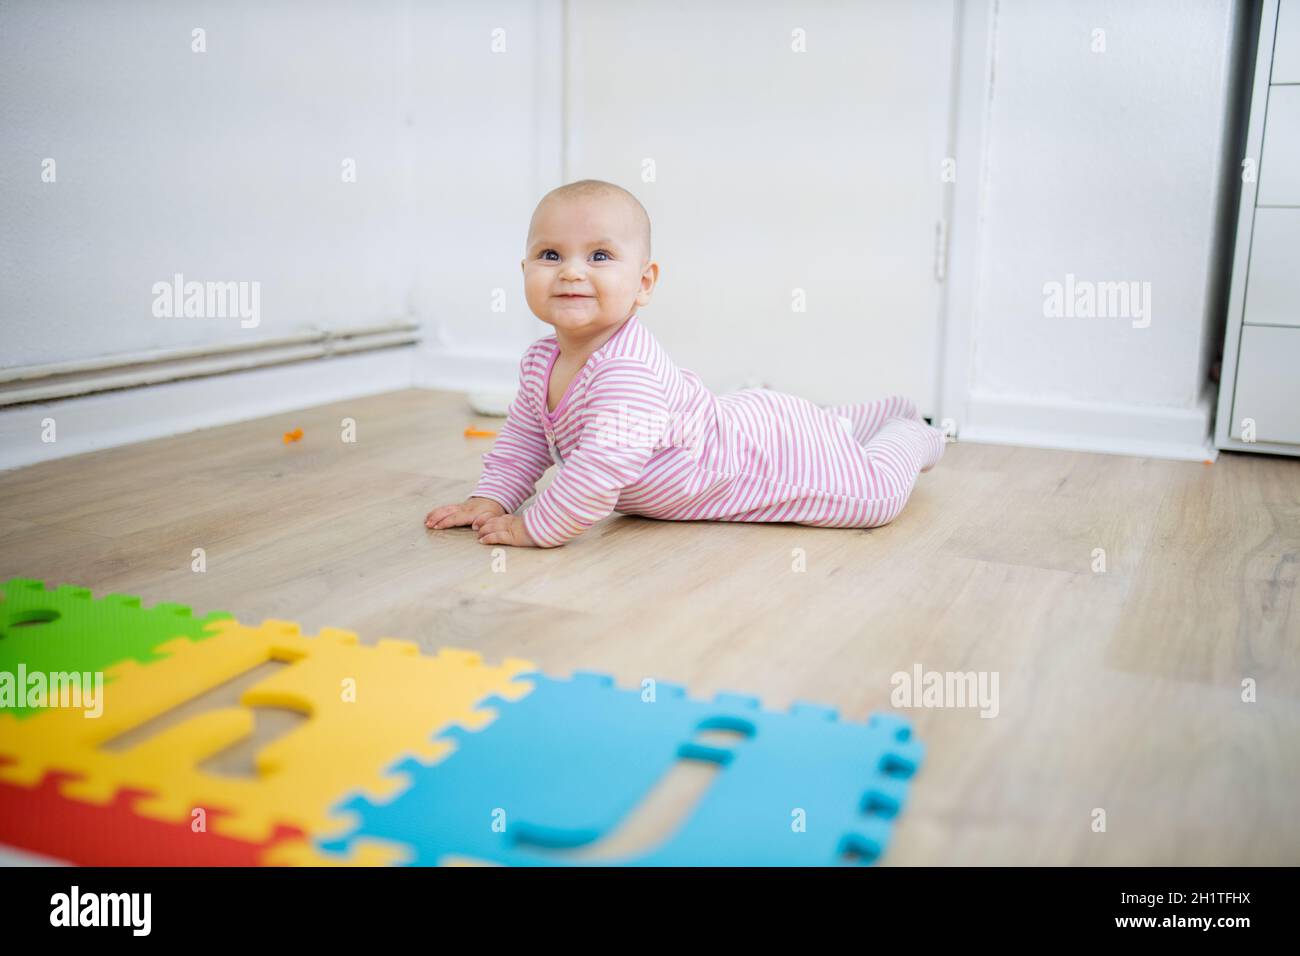 Entzückendes Baby lächelt und liegt mit dem Gesicht nach unten auf dem Holzboden neben der farbenfrohen Kindermatte. Porträt von niedlichen Baby spielen auf dem Boden. Glückliche Babys havi Stockfoto